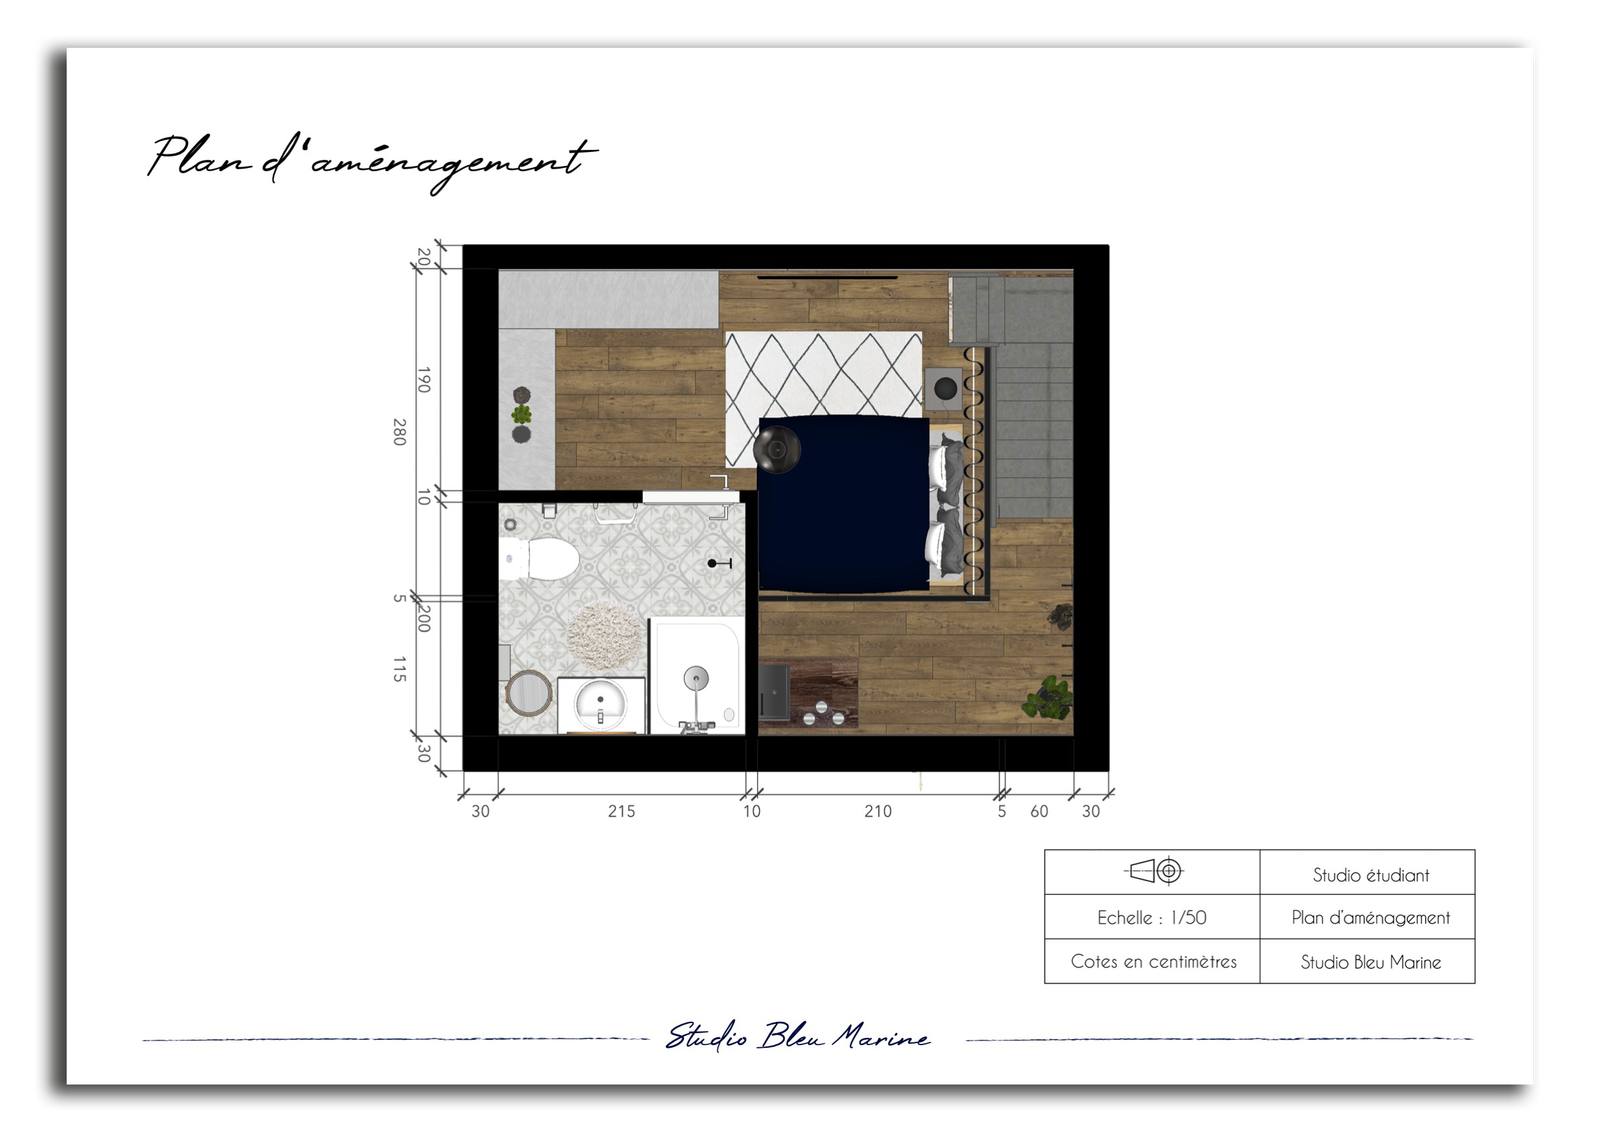 Plan en 2D d’une pièce qui permet de définir la disposition du mobilier dans le futur espace.